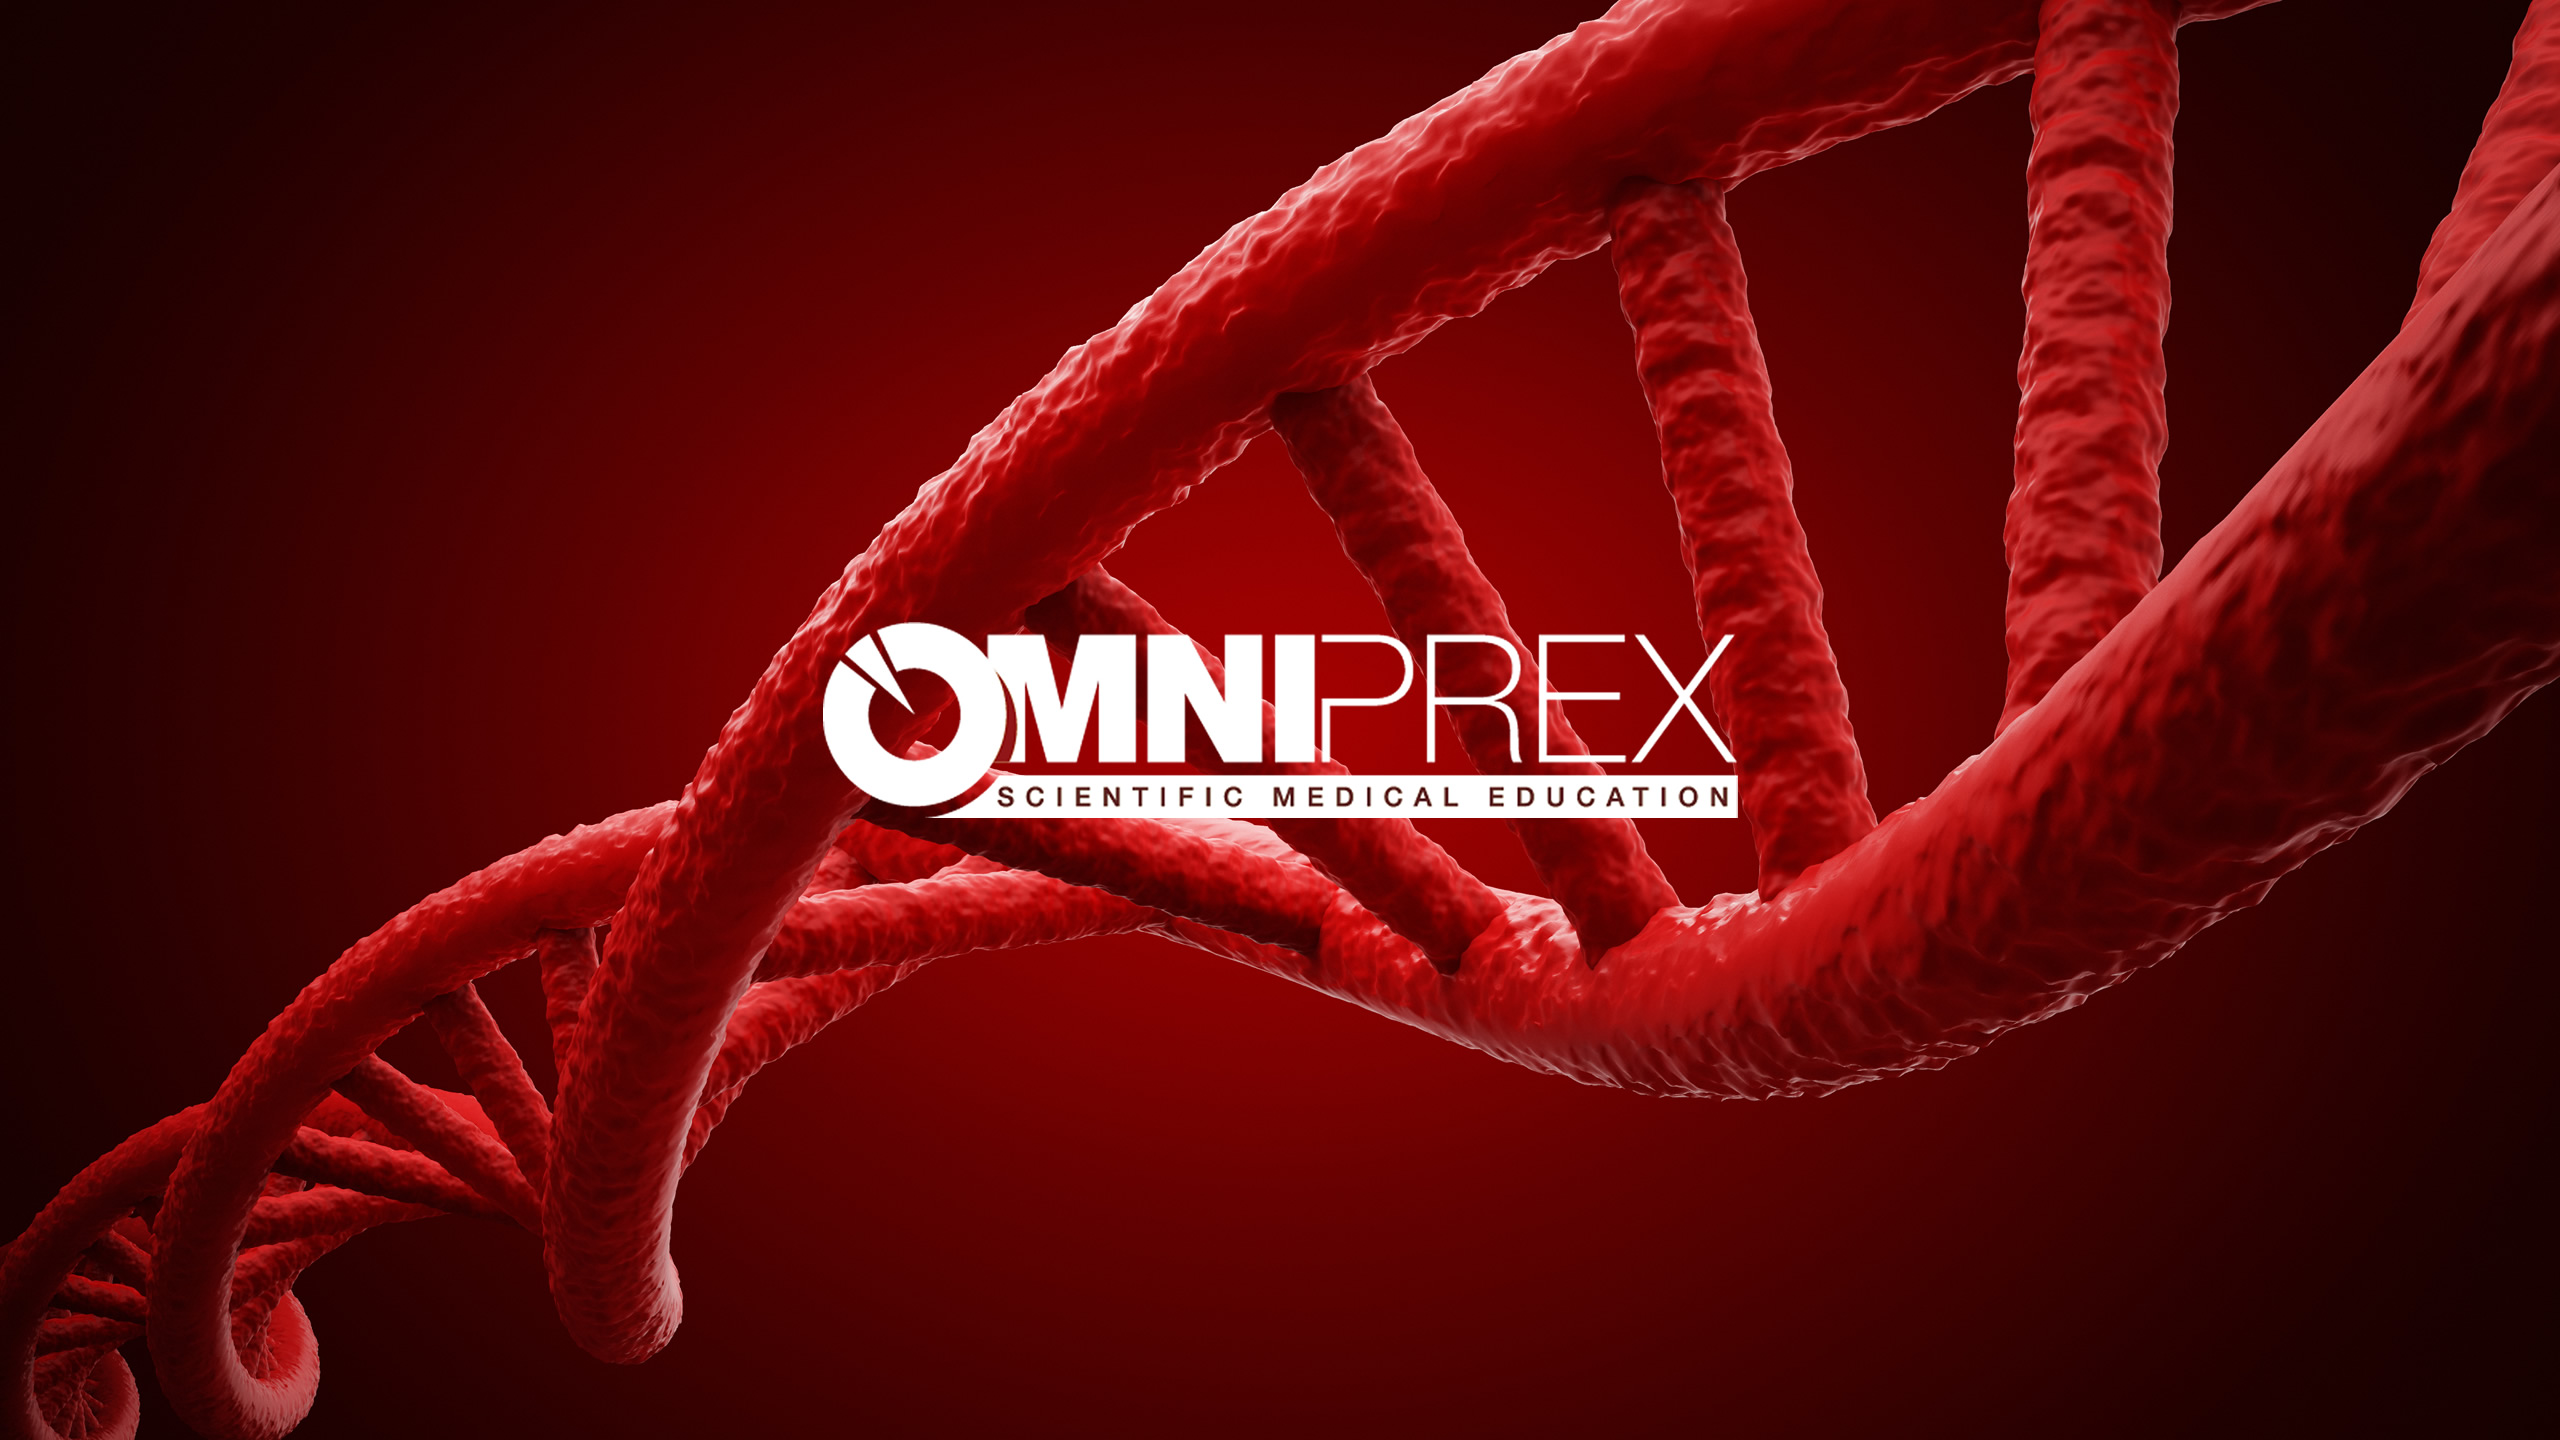 “Omniprex es un ejemplo de excelencia en la formación médica continuada”...